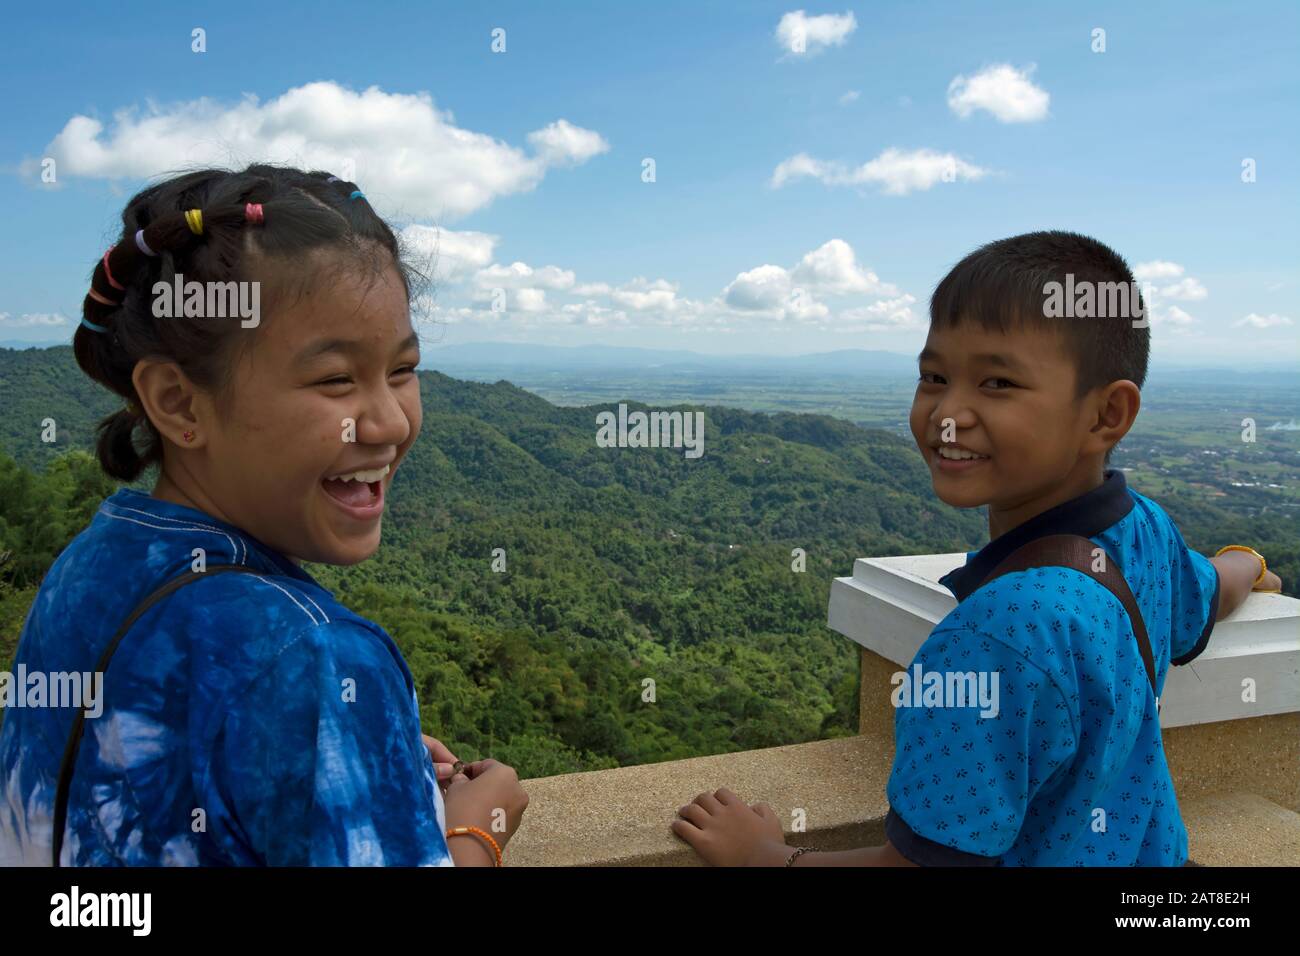 sur une plate-forme d'observation dans les collines du nord de la thaïlande, deux jeunes enfants thaïlandais tournent la tête et souriez Banque D'Images